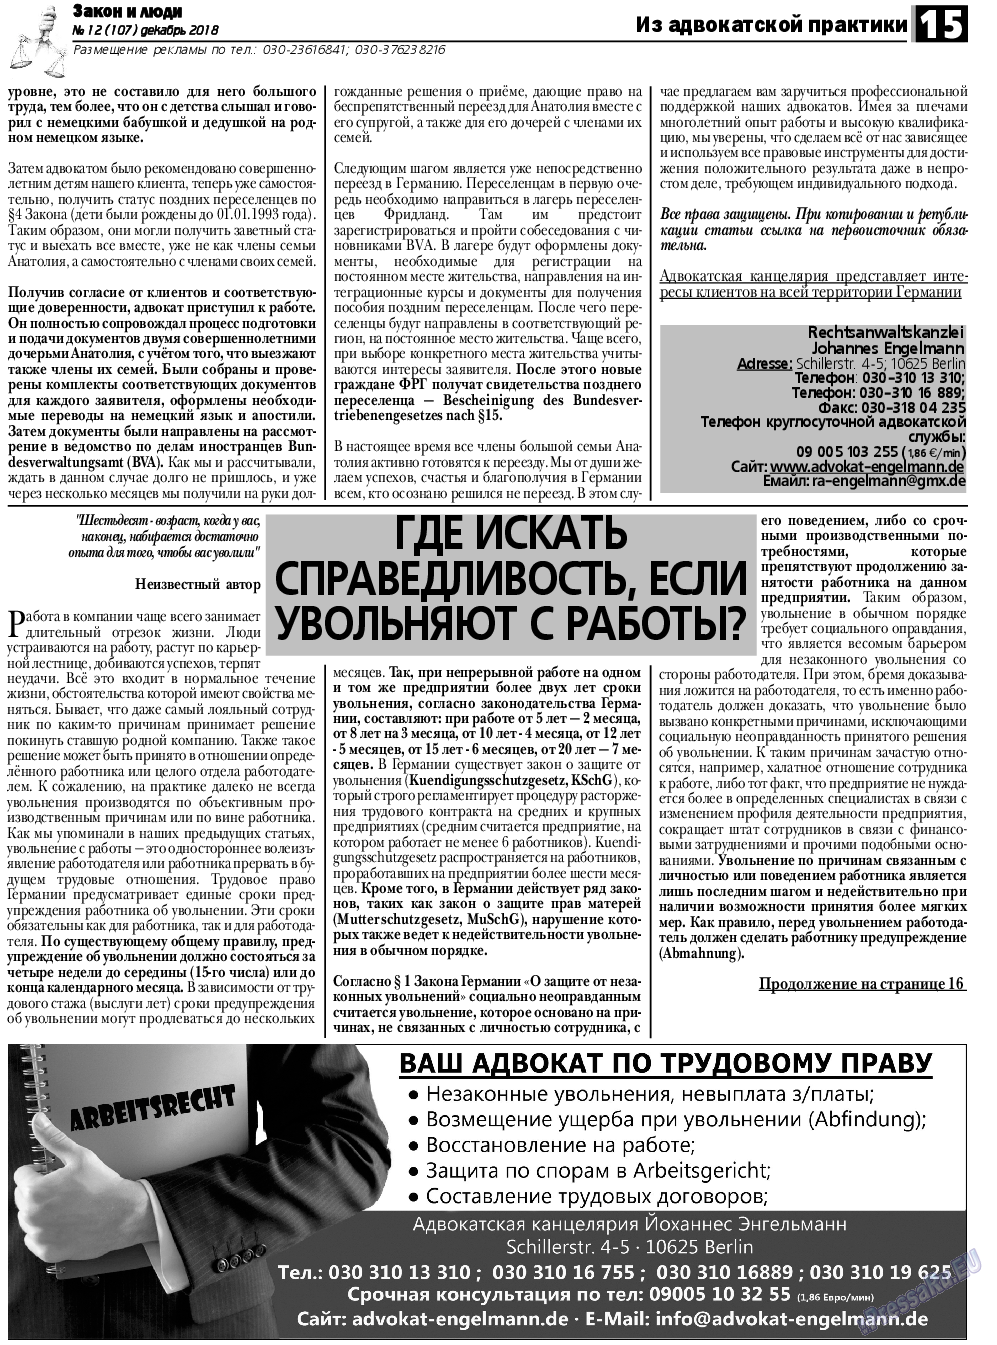 Закон и люди, газета. 2018 №12 стр.15